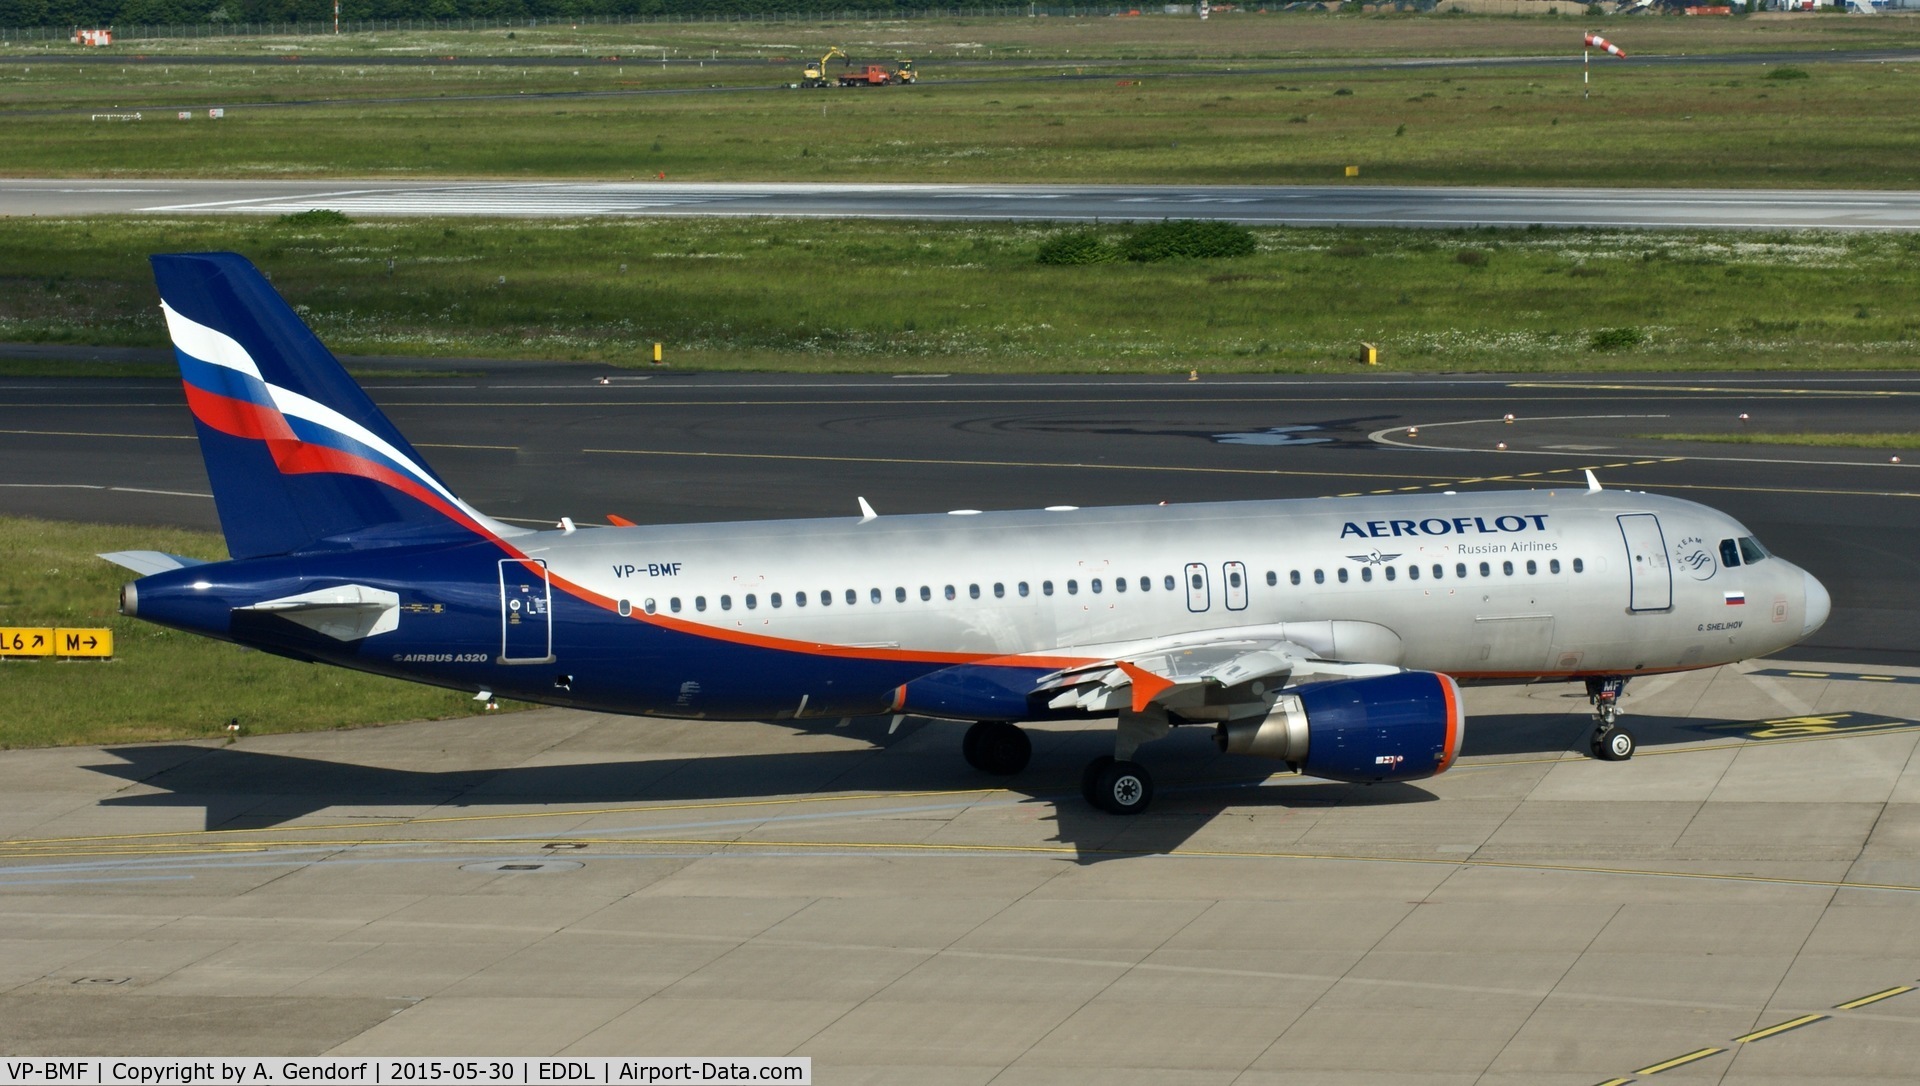 VP-BMF, 2008 Airbus A320-214 C/N 3711, Aeroflot, is here at Düsseldorf Int'l(EDDL)